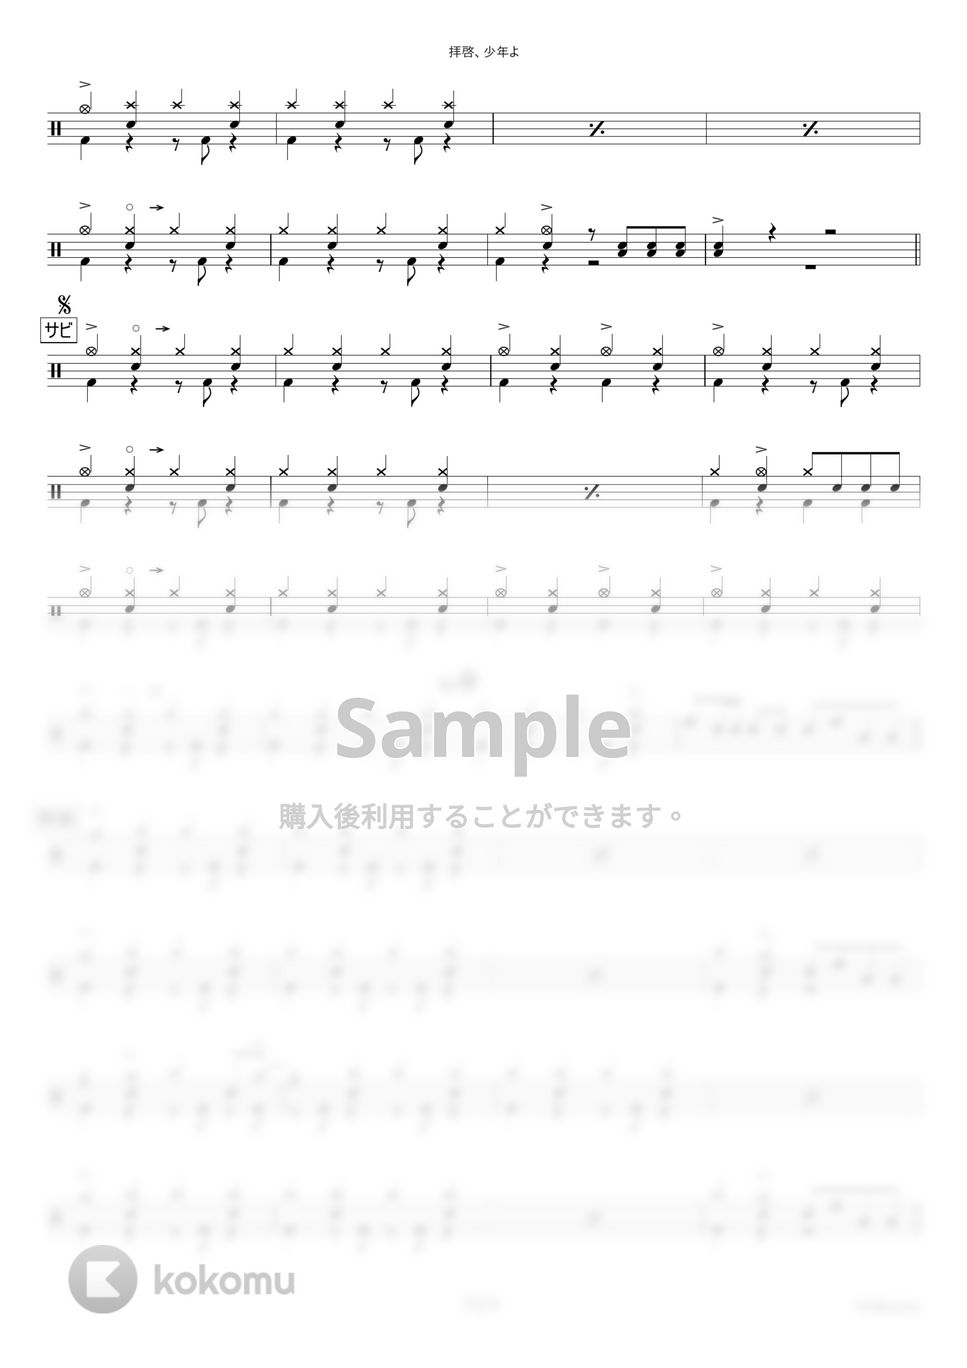 Hump Back - 拝啓、少年よ【ドラム楽譜・完コピ】 by HYdrums